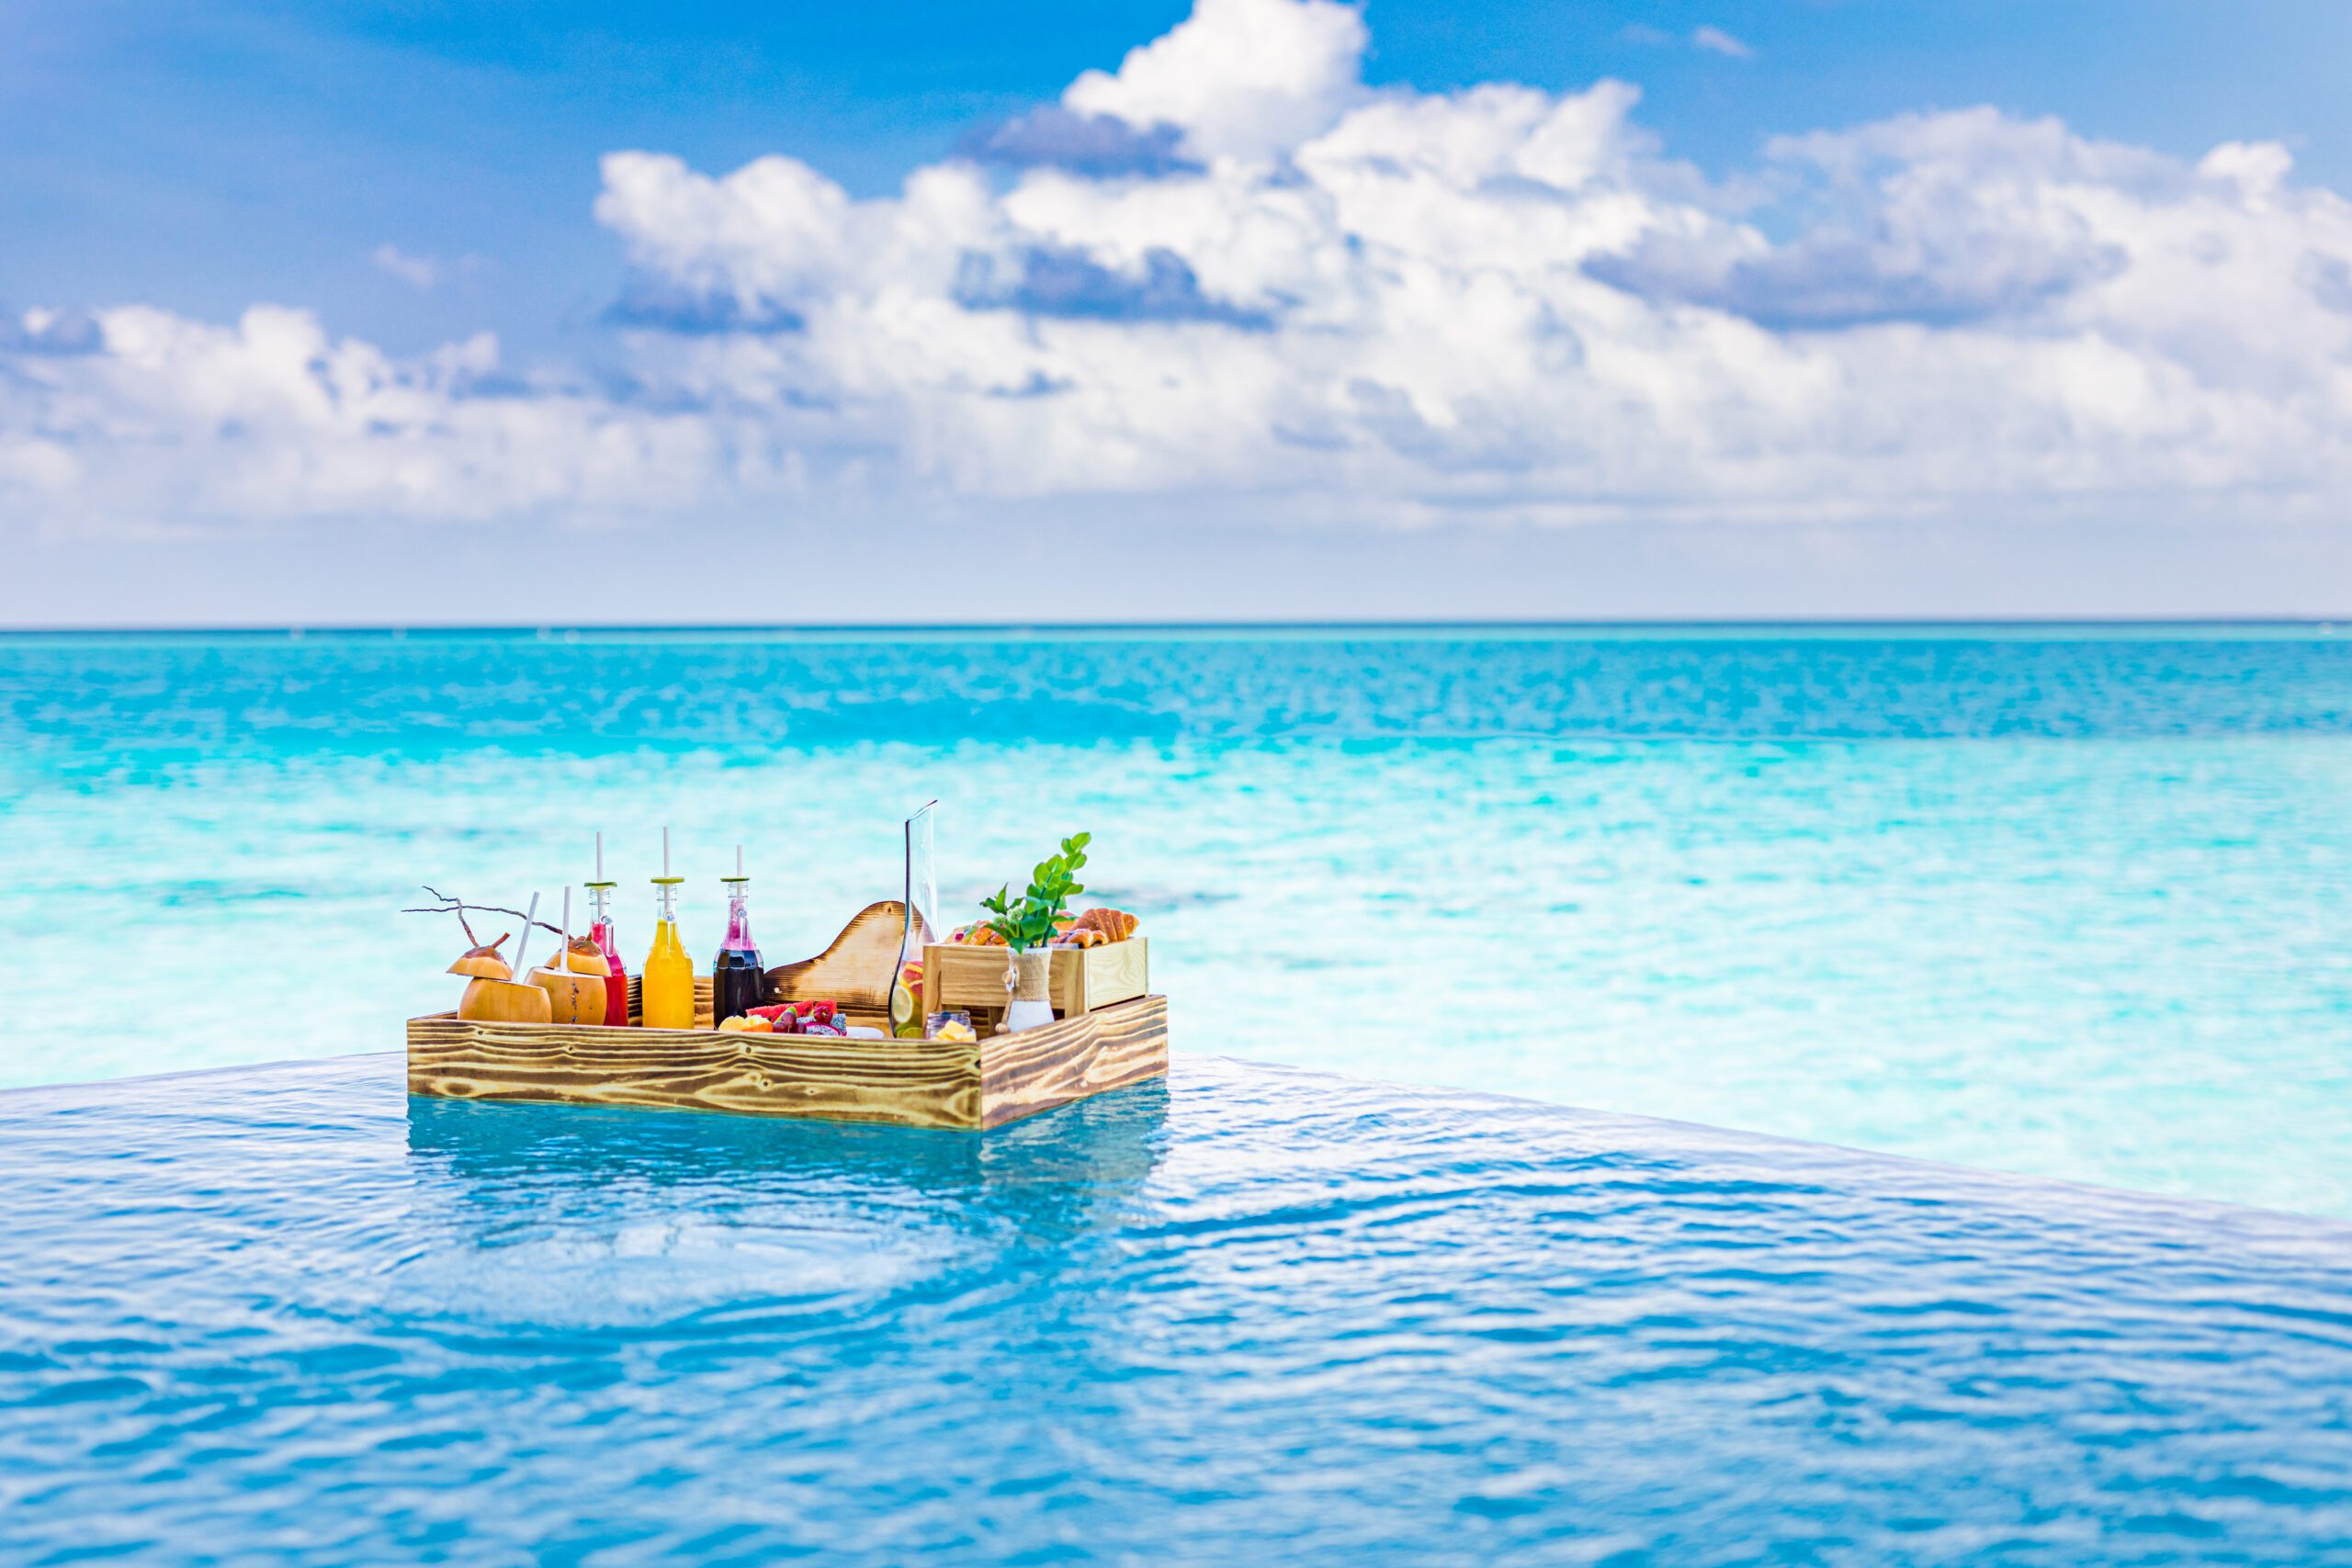 breakfast-swimming-pool-floating-breakfast-tropical-resort-table-relaxing-calm-pool-water